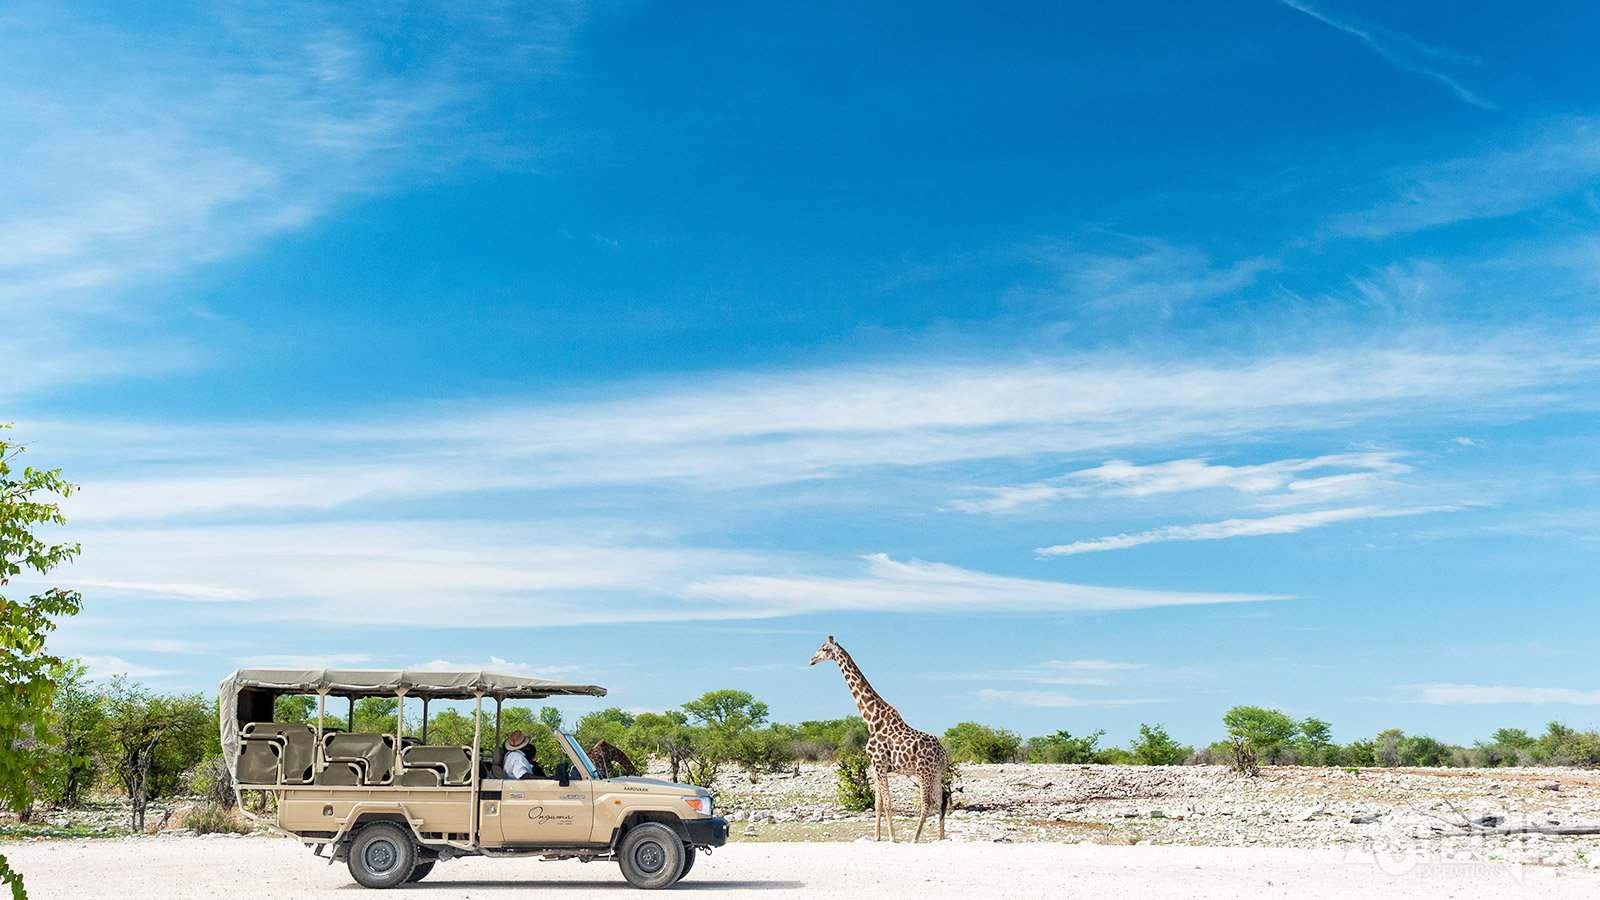 Ruim 30 diersoorten vinden hun thuis in het Onguma Game Reserve, zoals de giraf, zebra, kudu, luipaard en leeuw